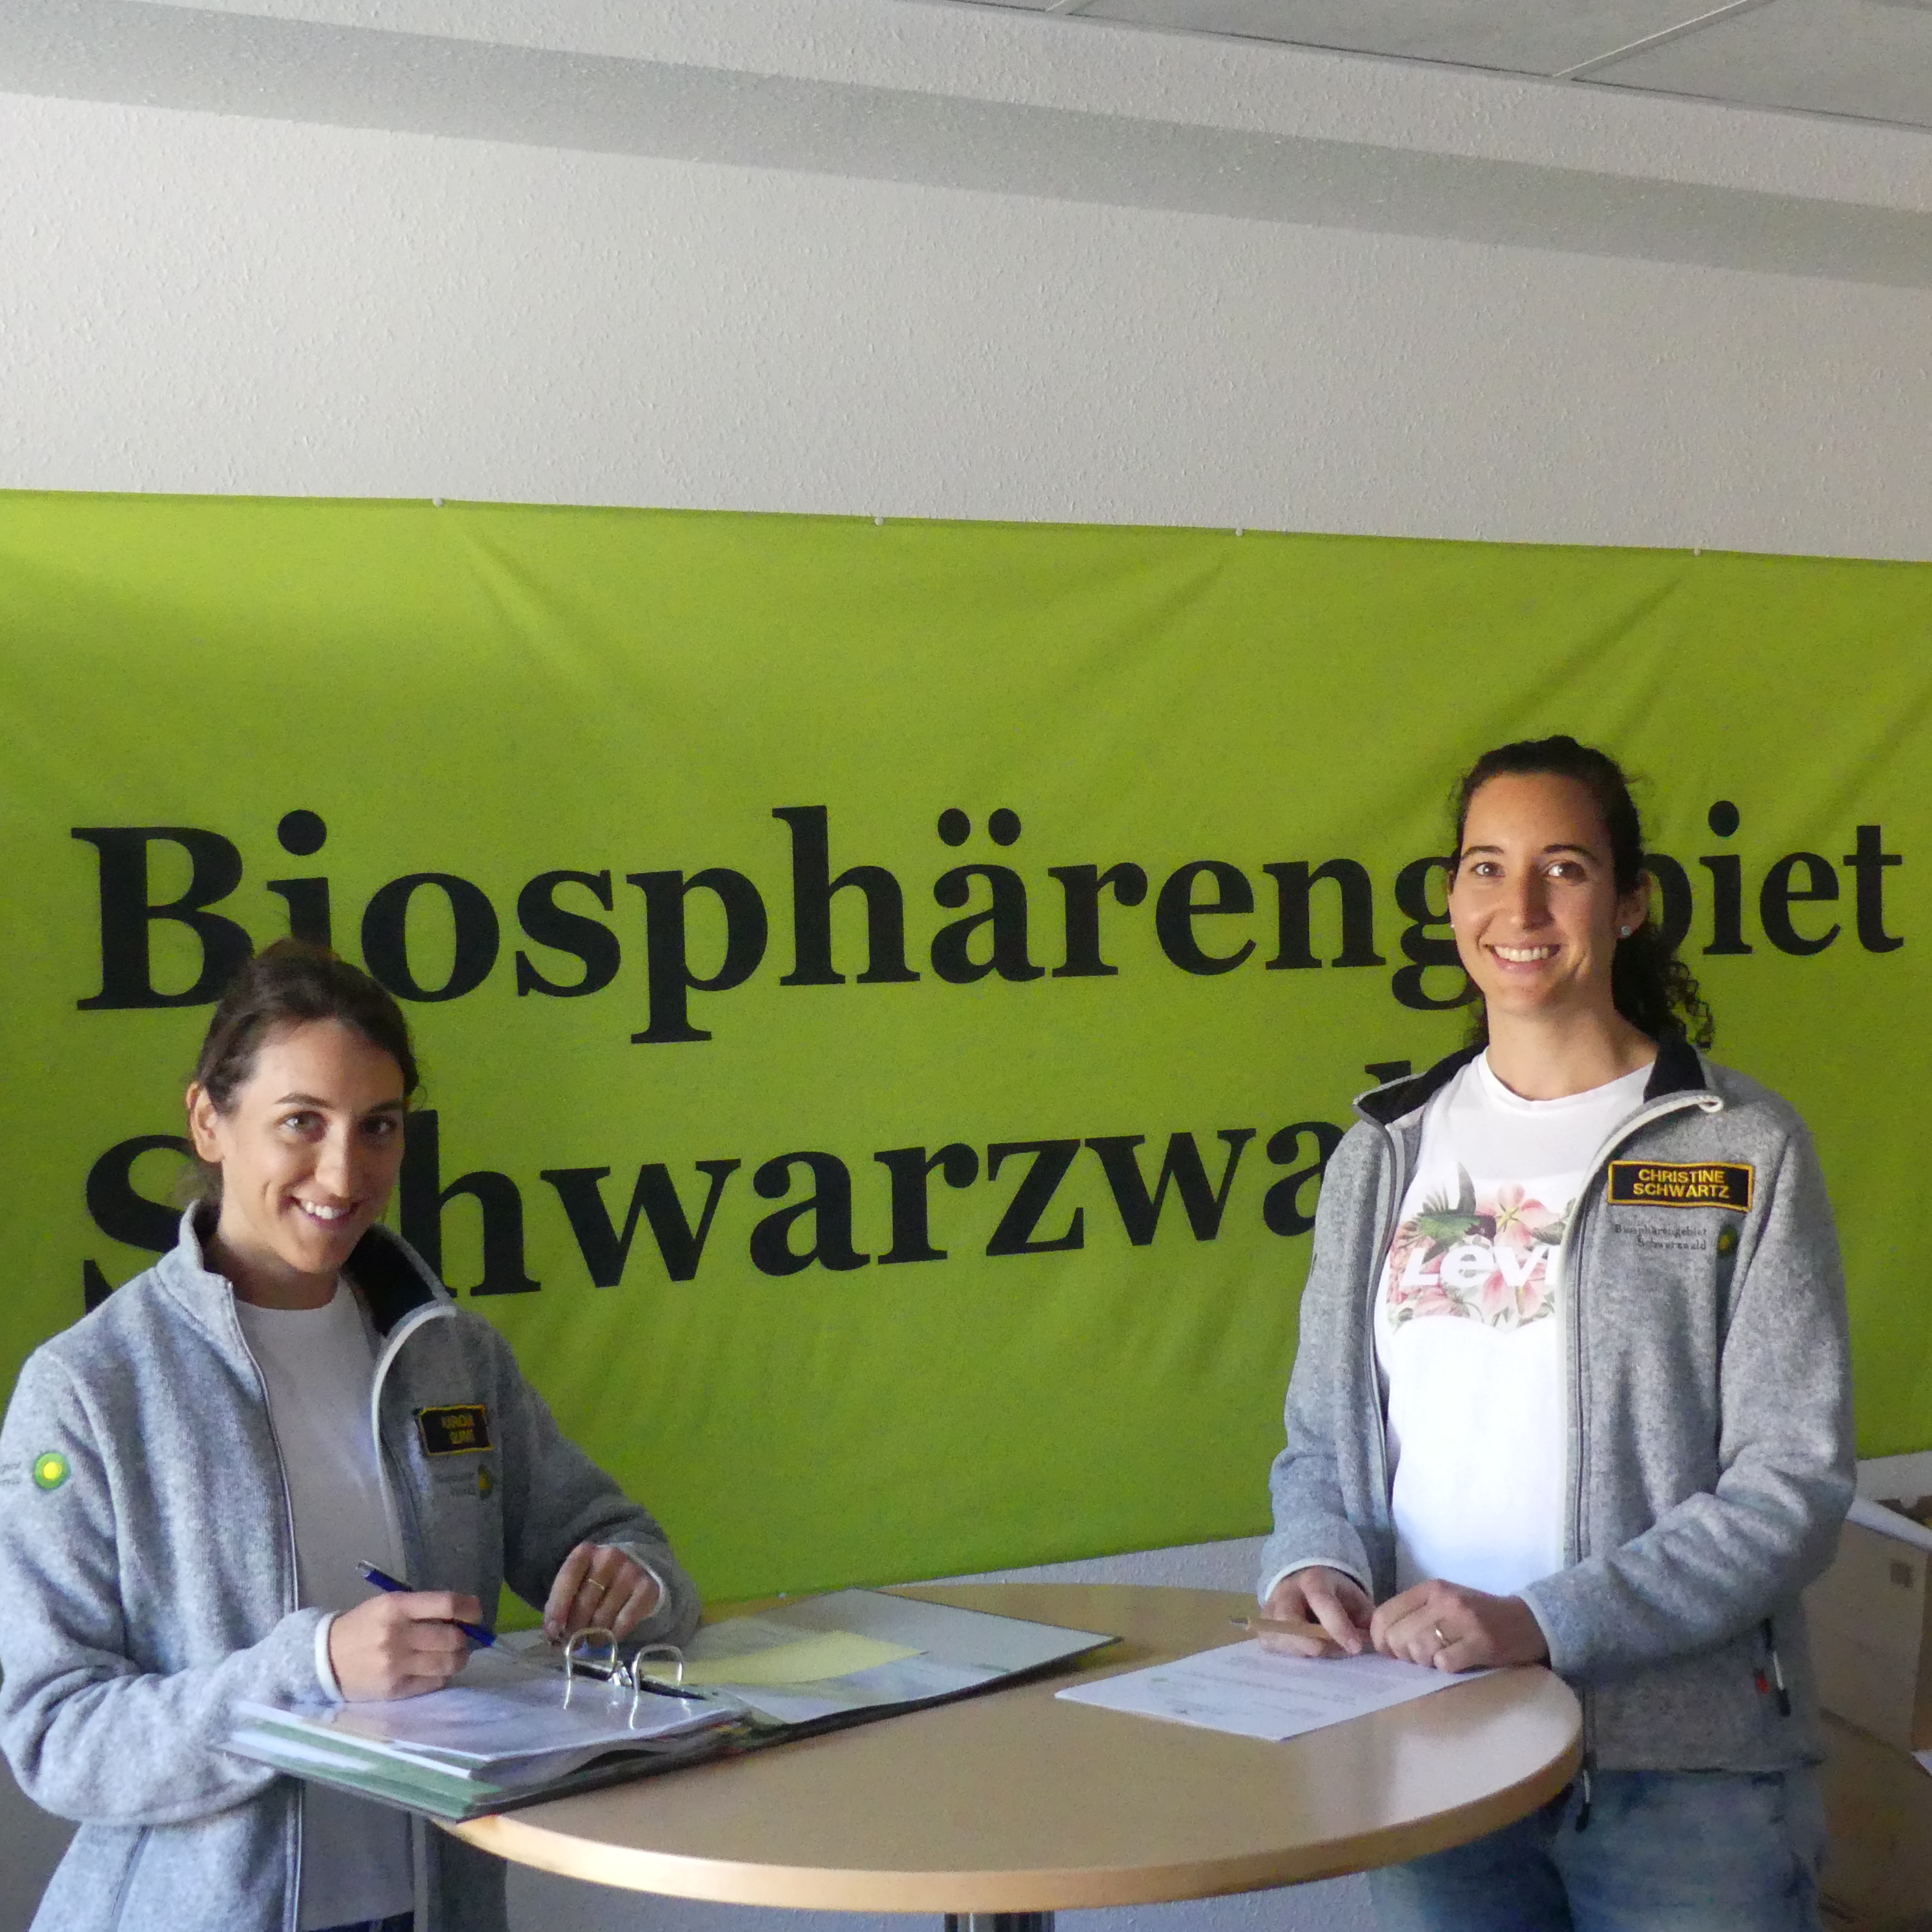 Neue Förderperiode für das Biosphärengebiet Schwarzwald startet